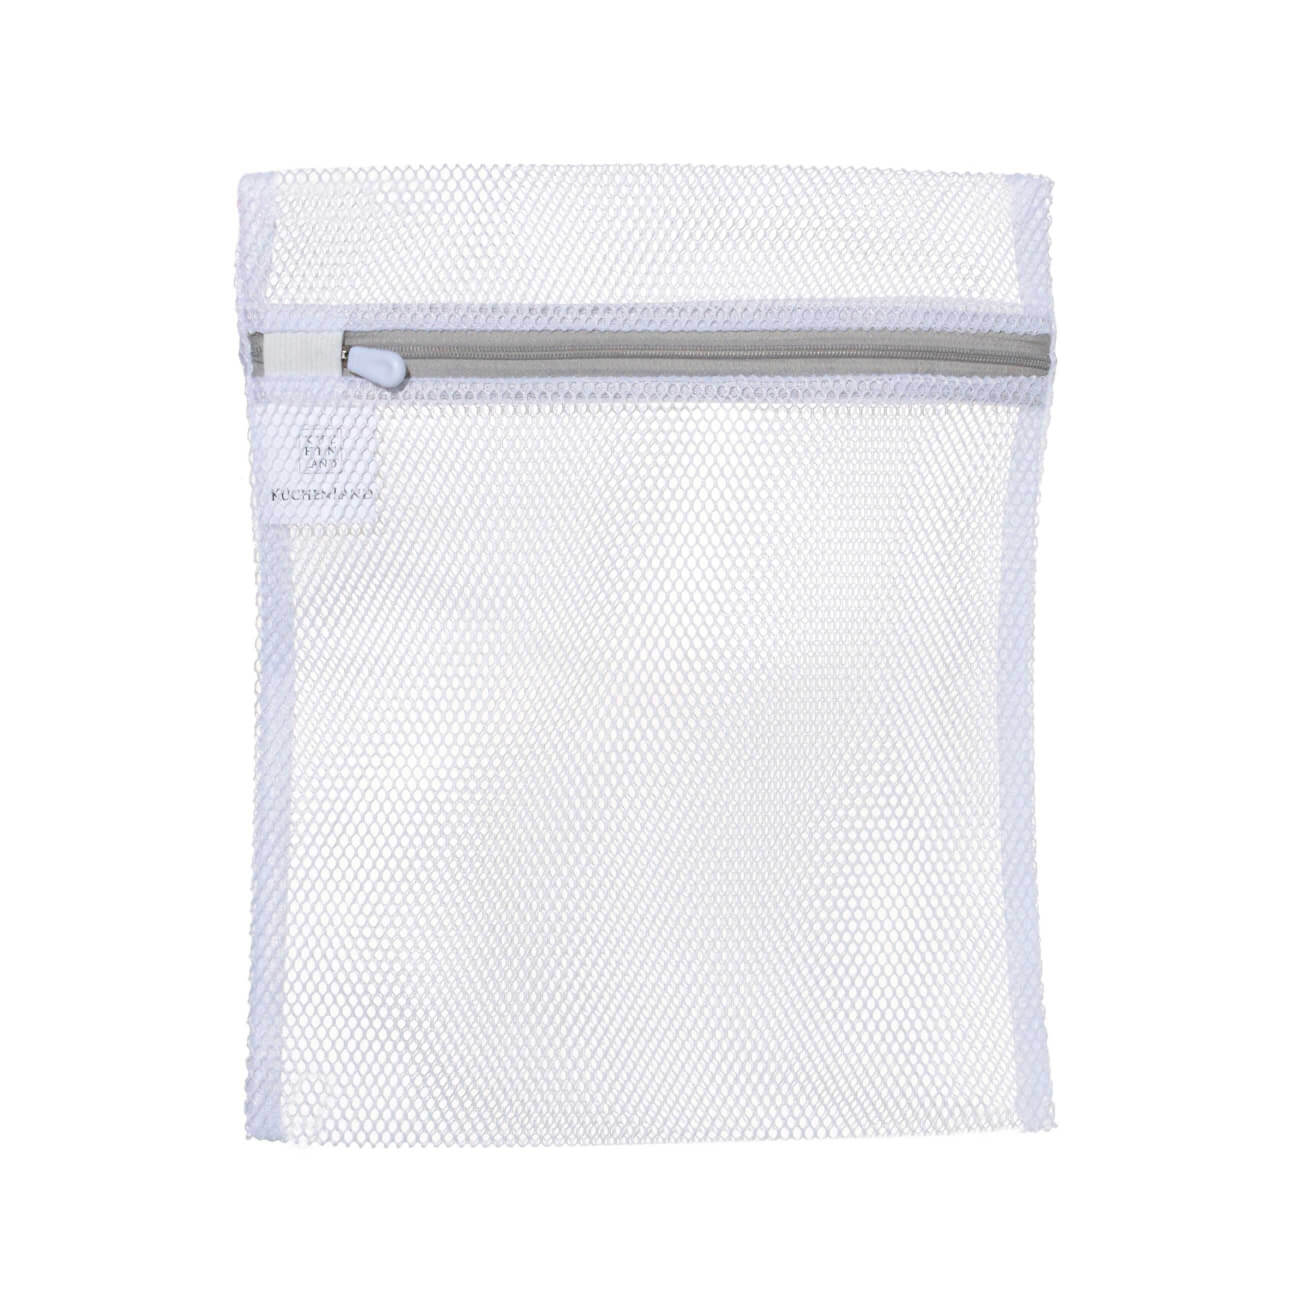 Мешок для стирки нижнего белья, 25х30 см, полиэстер, бело-серый, Safety мешок для стирки нижнего белья niklen 46x35 см